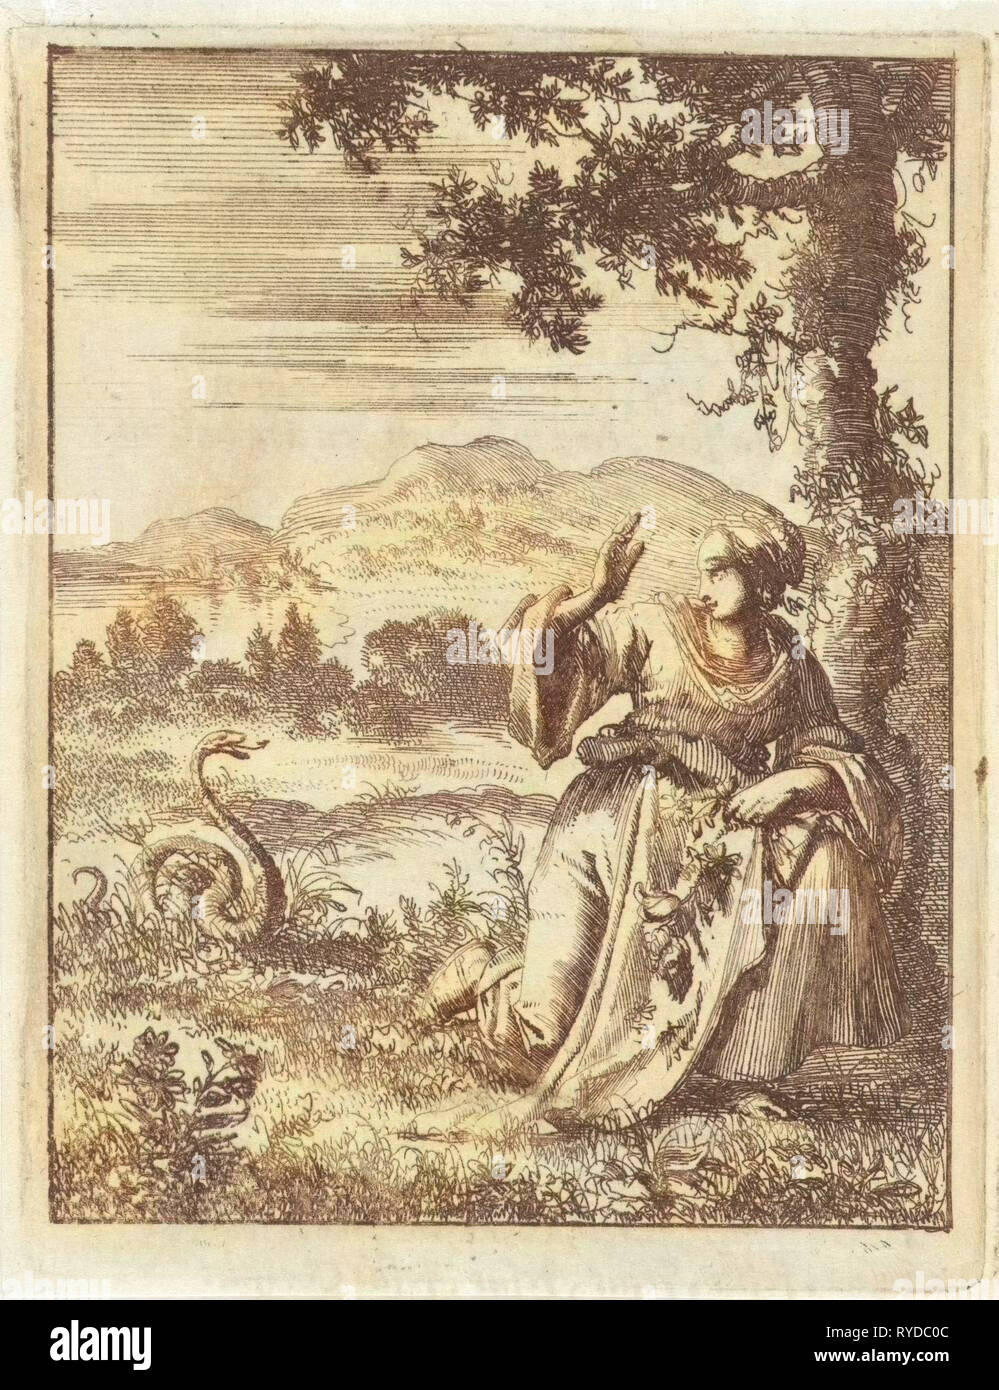 Une femme choisir une fleur attaqué par un serpent, Jan Luyken, Pieter Arentsz II, 1687 Banque D'Images